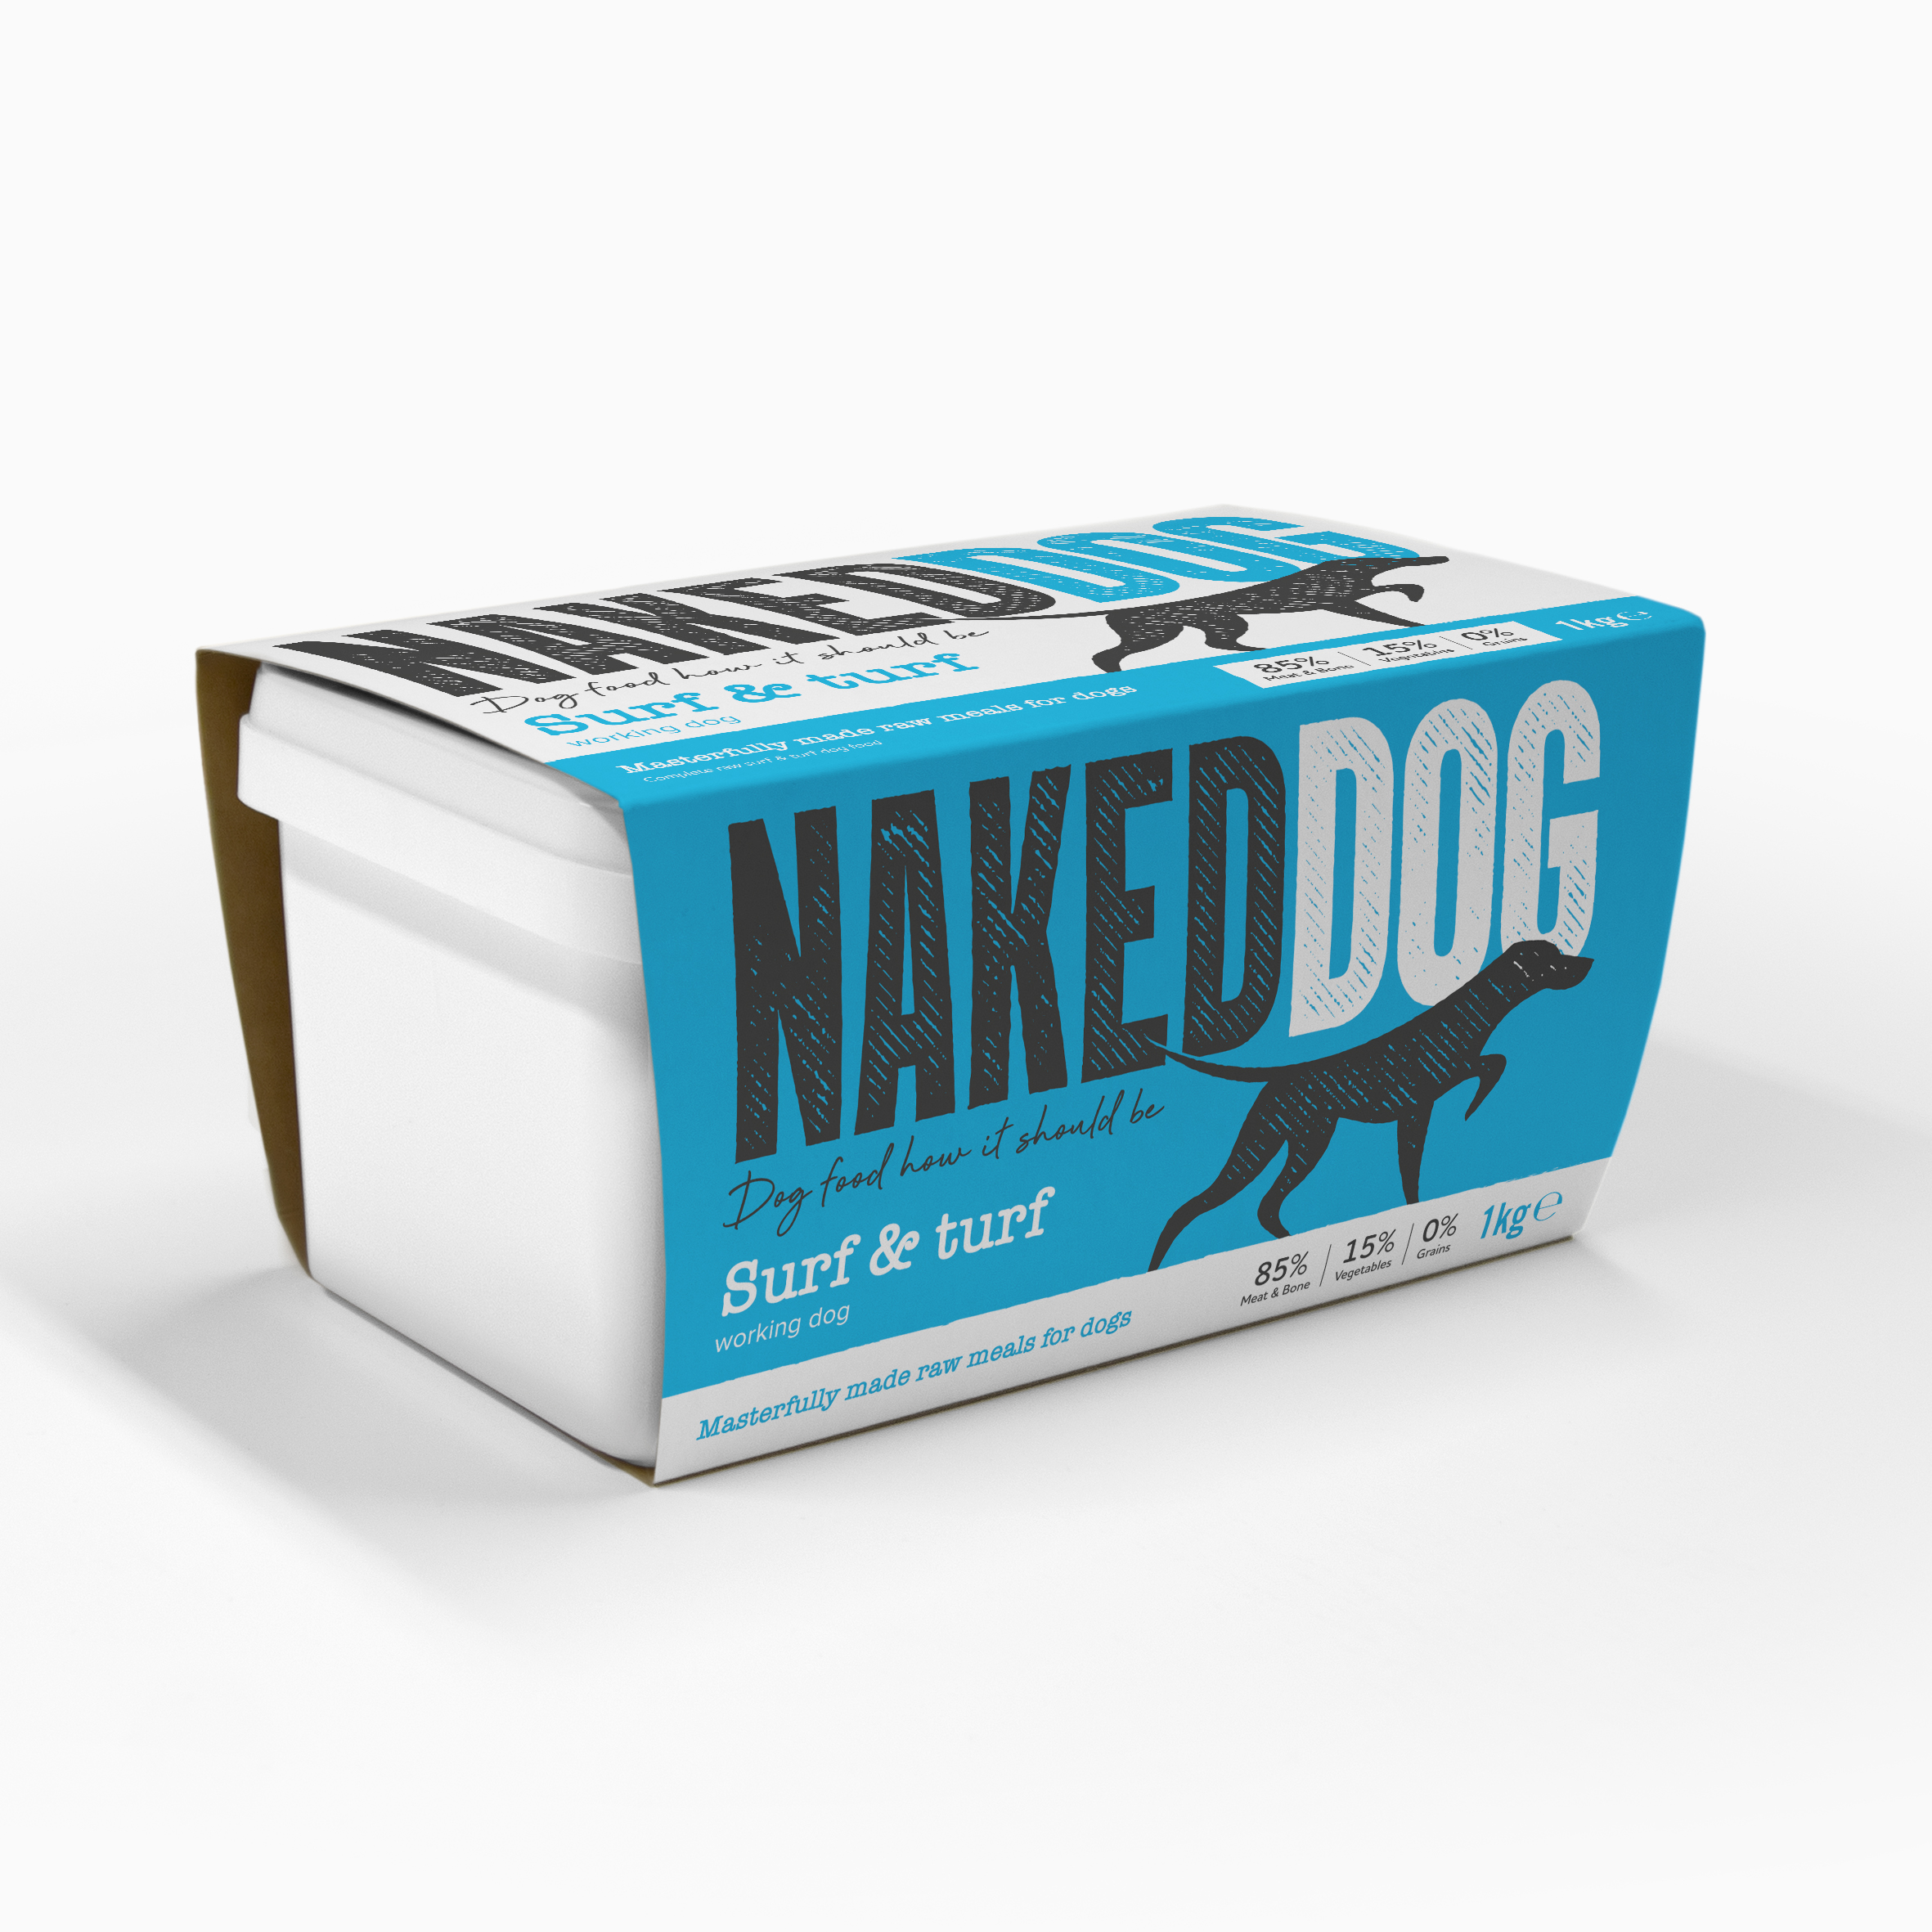 Naked Dog_product image-1kg pack_Surf.jp